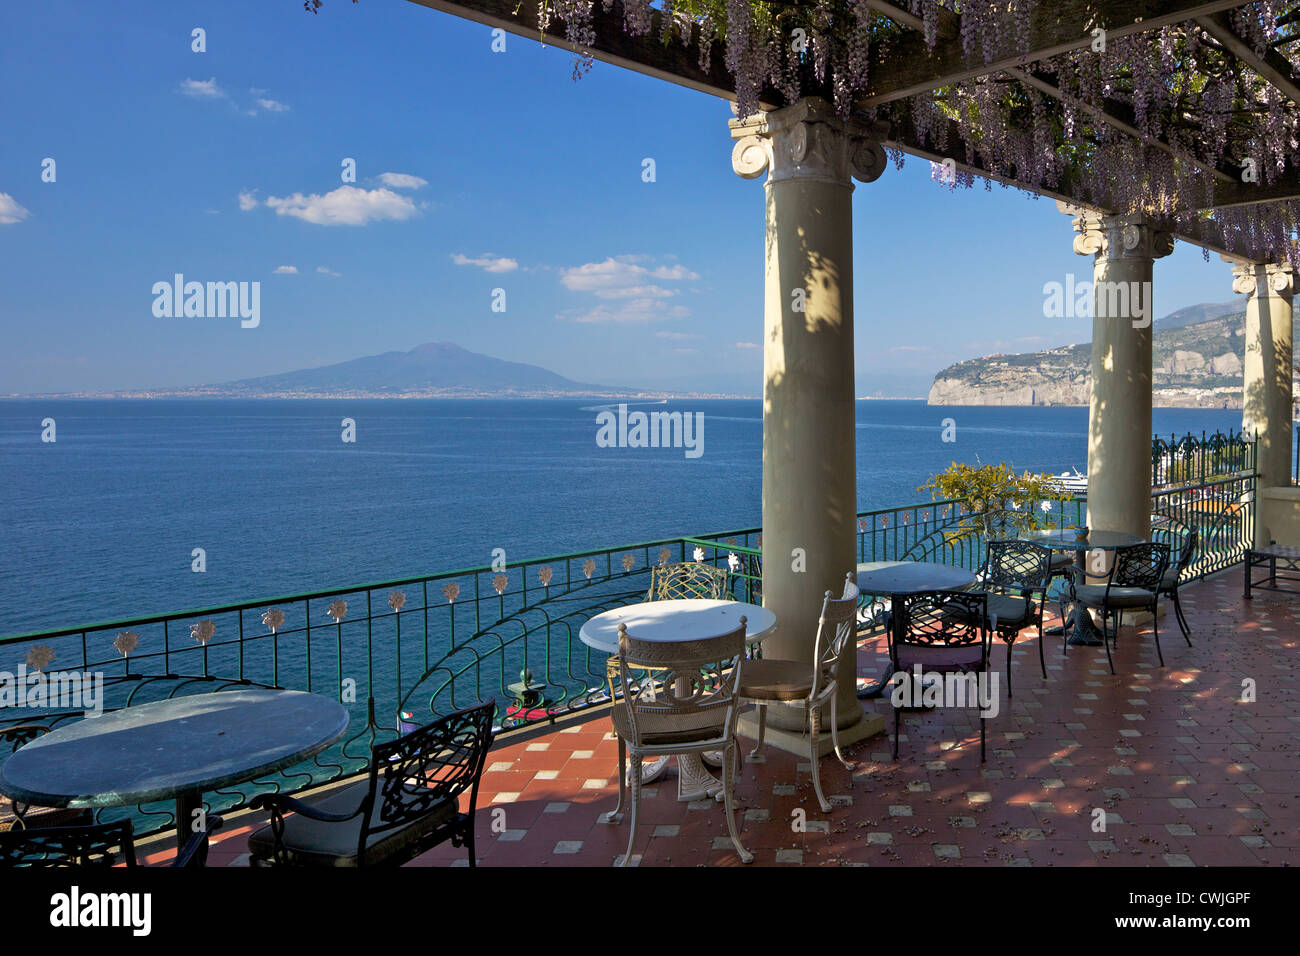 Terrazza con vista sul Vesuvio e sul golfo di Napoli presso l'Hotel Bellevue Syrene a Sorrento, Riviera Napoletana, Campania, Italia Foto Stock